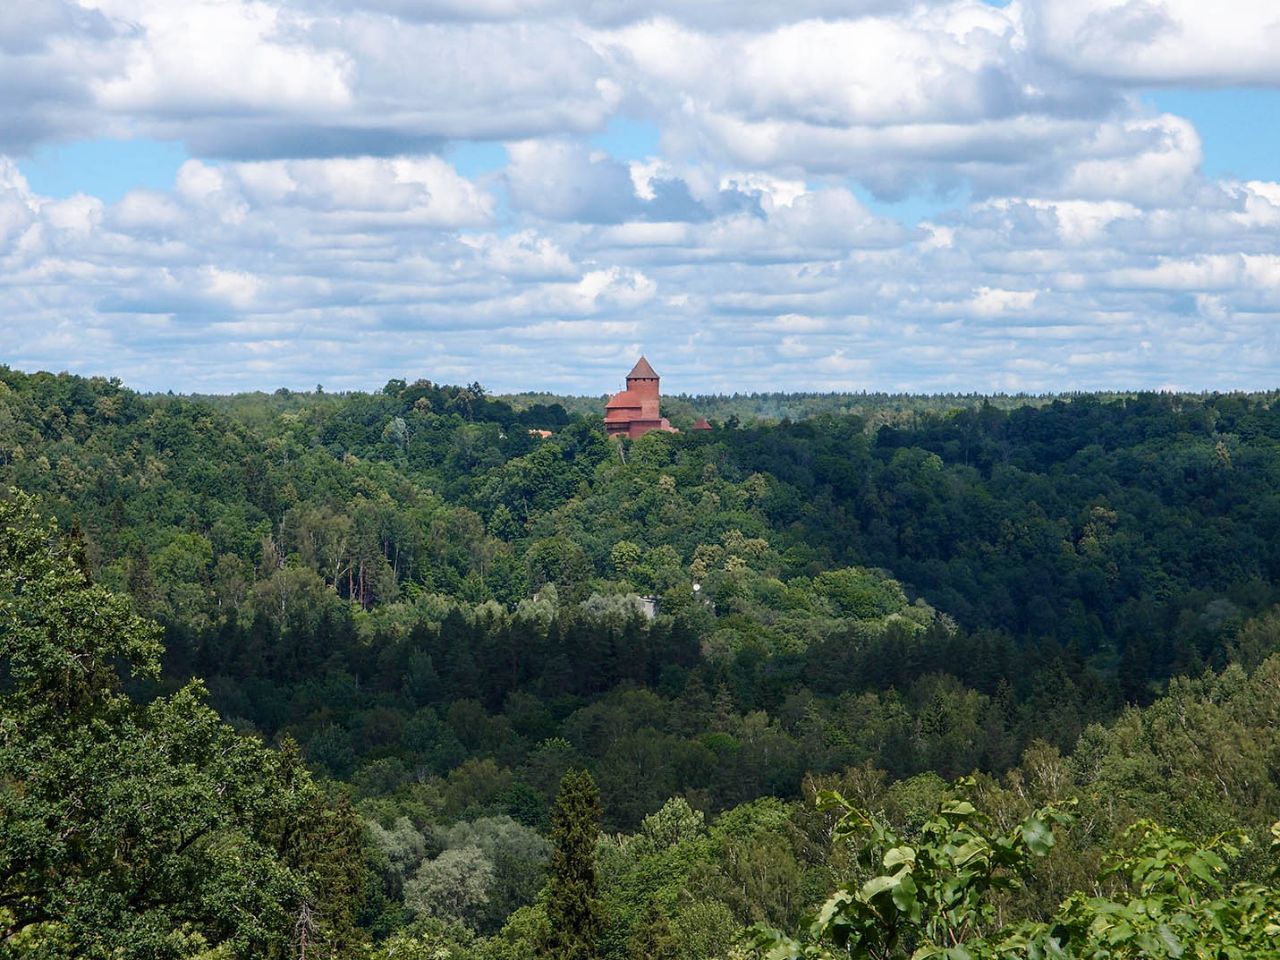 Сигулдский замок Сигулда, Латвия